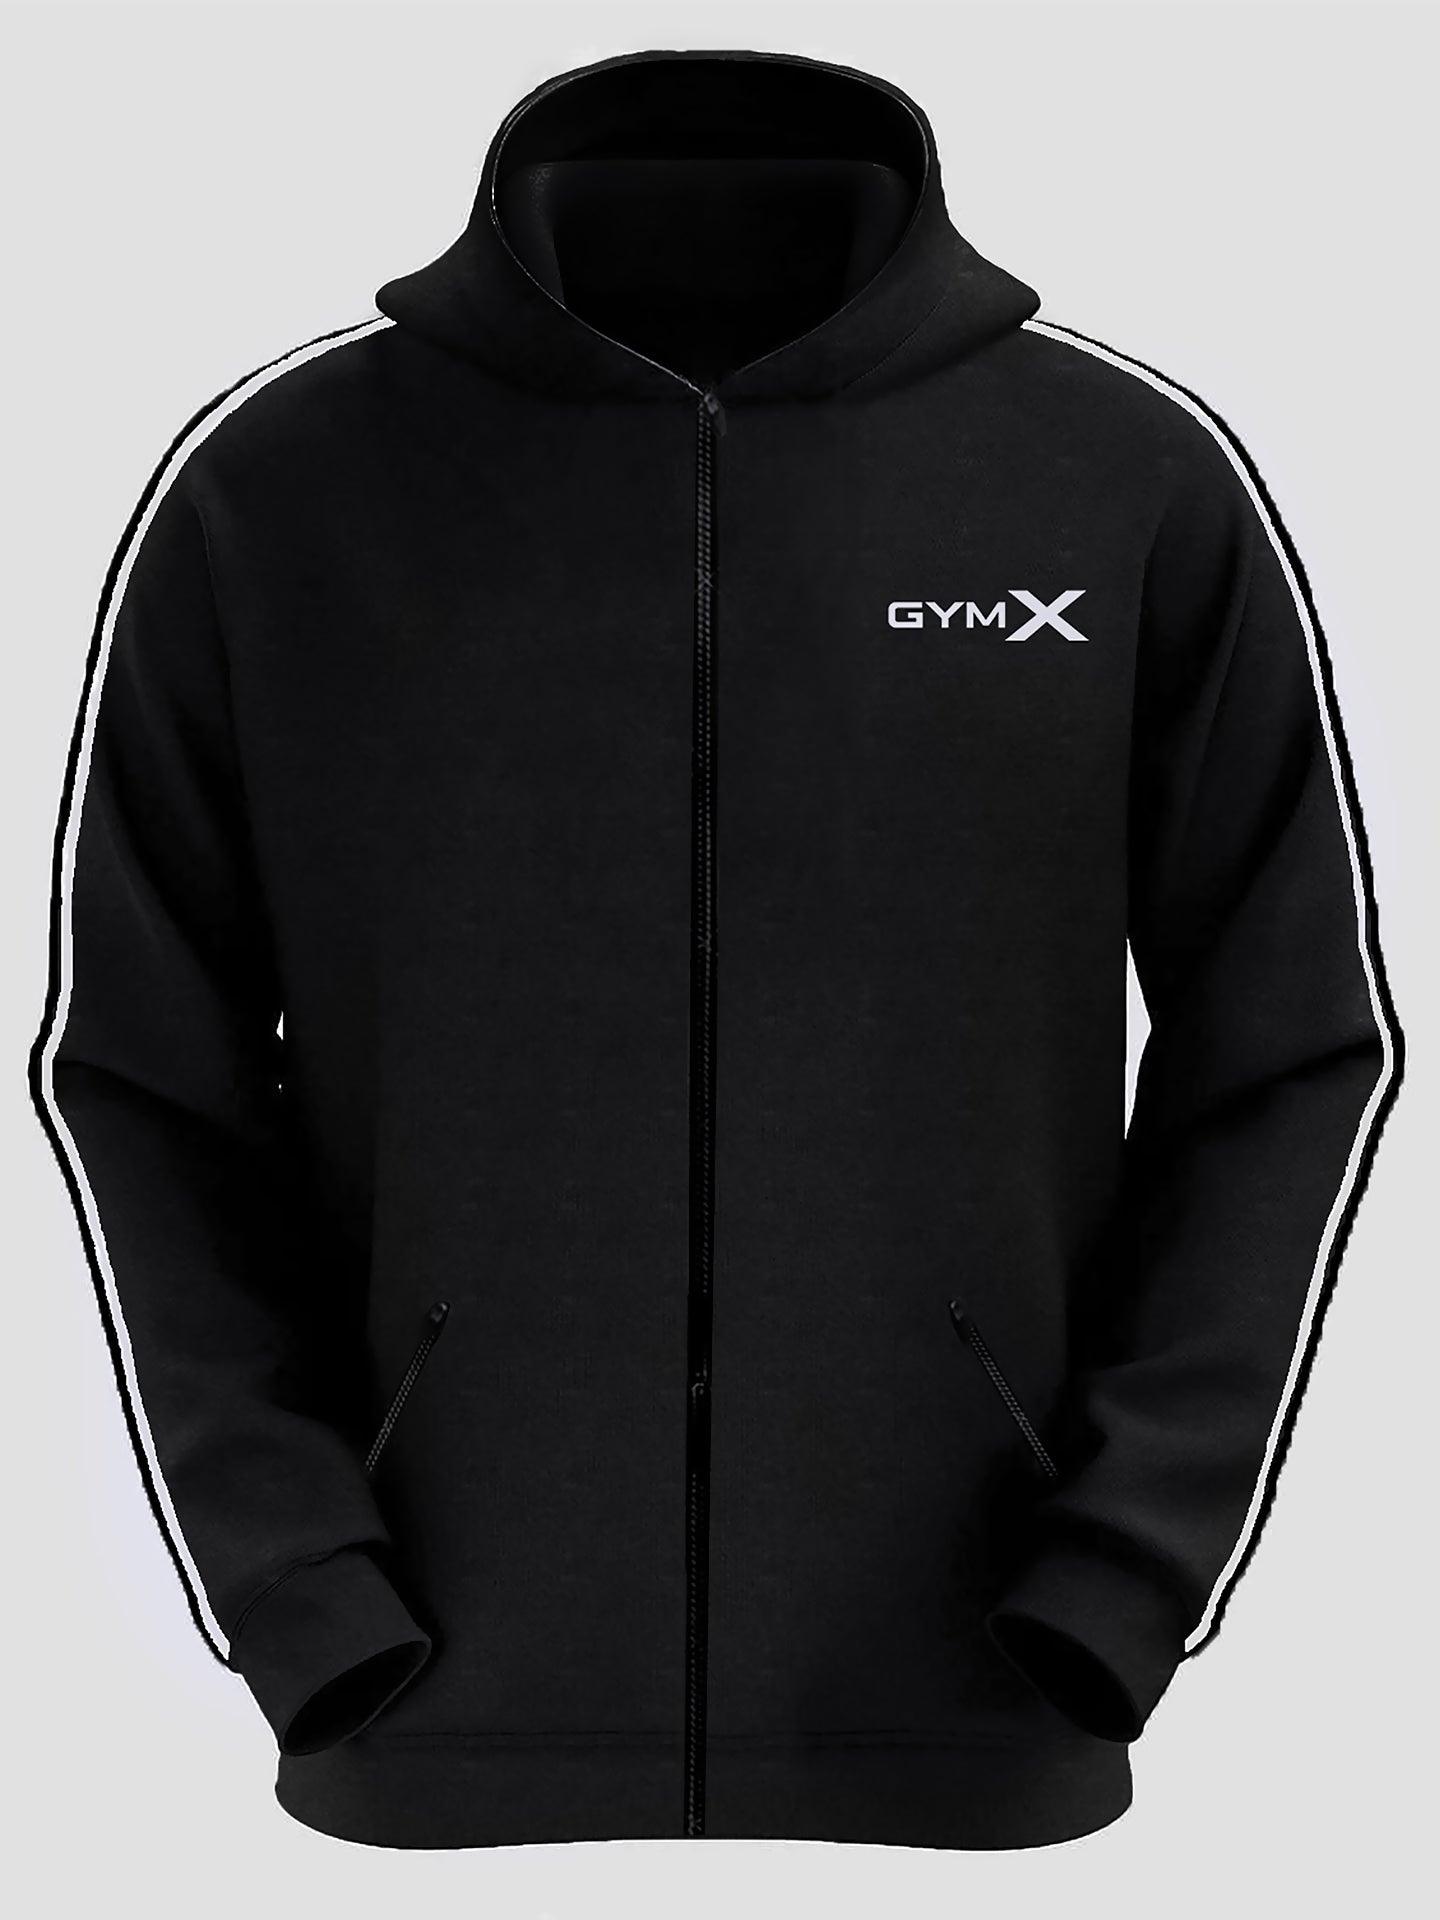 Gymx Black Hoodie - Sale at Rs 899.00, Man Hoodies